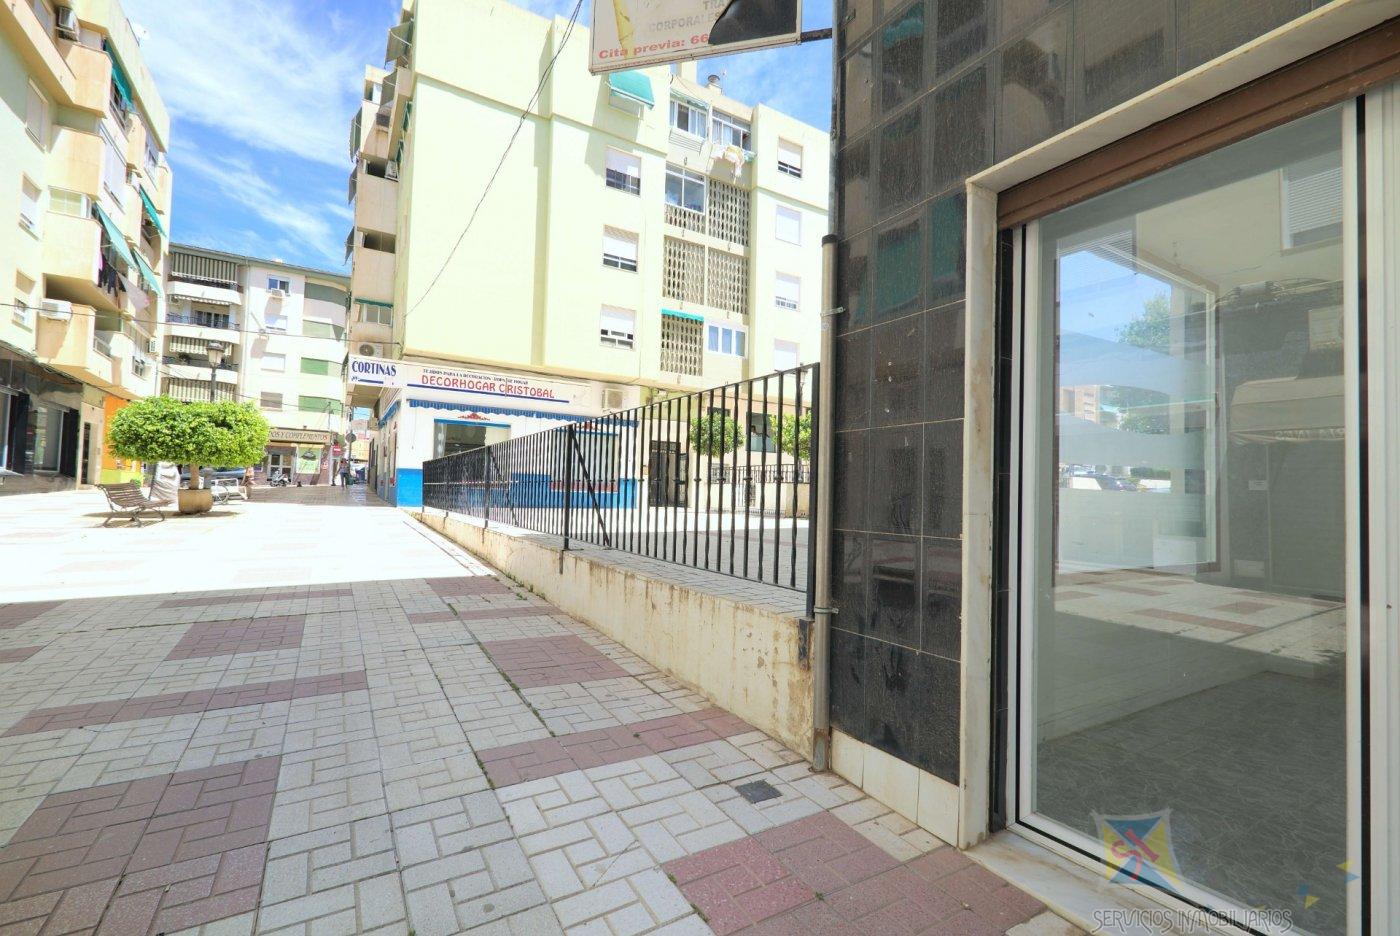 For sale of commercial in Vélez - Málaga